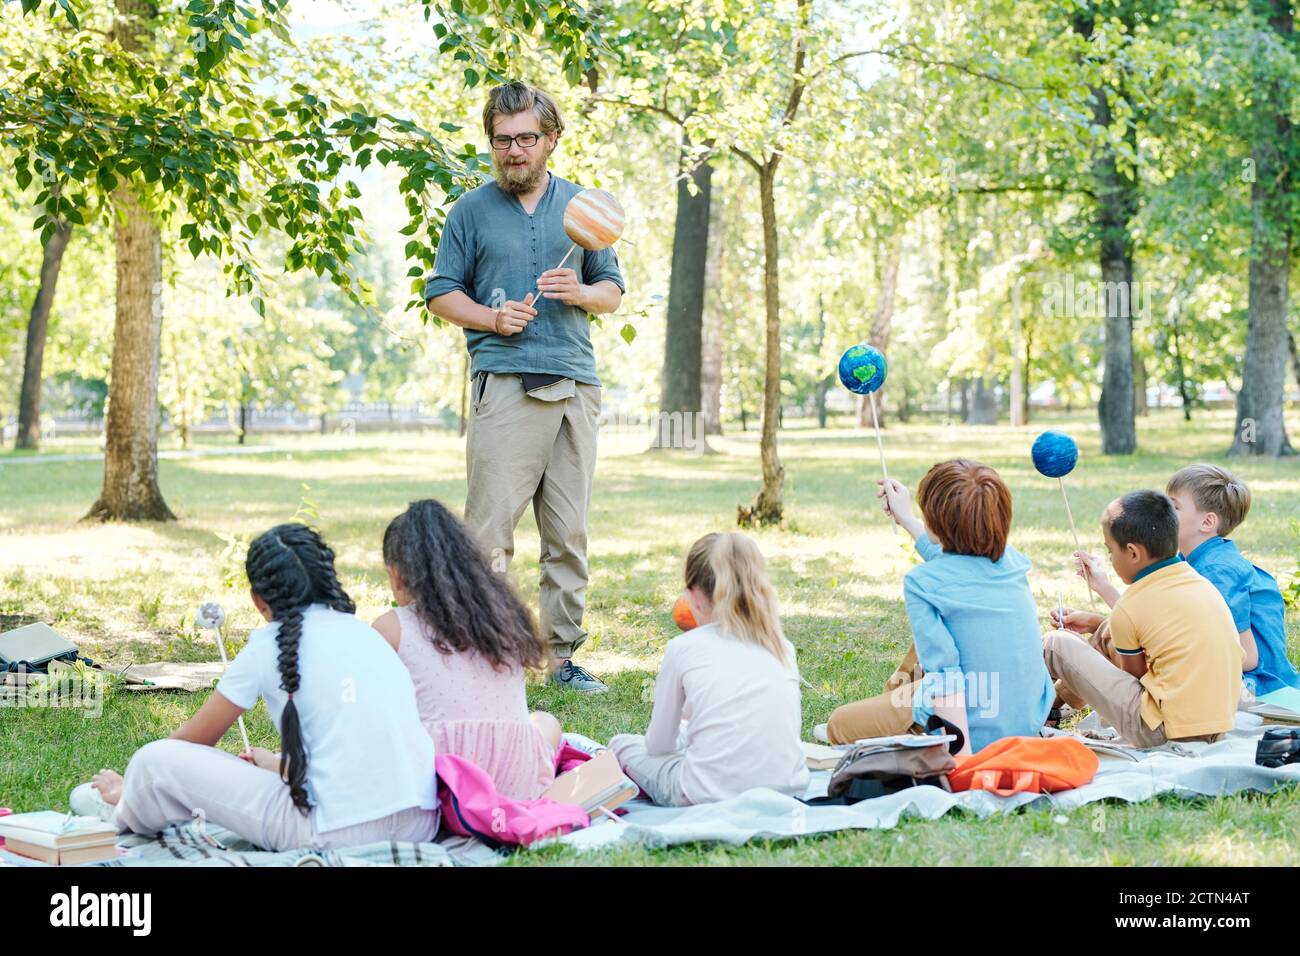 Maestro barbudo sosteniendo modelo de planeta en palo y hablando con grupo de niños sentados en el suelo del parque Foto de stock